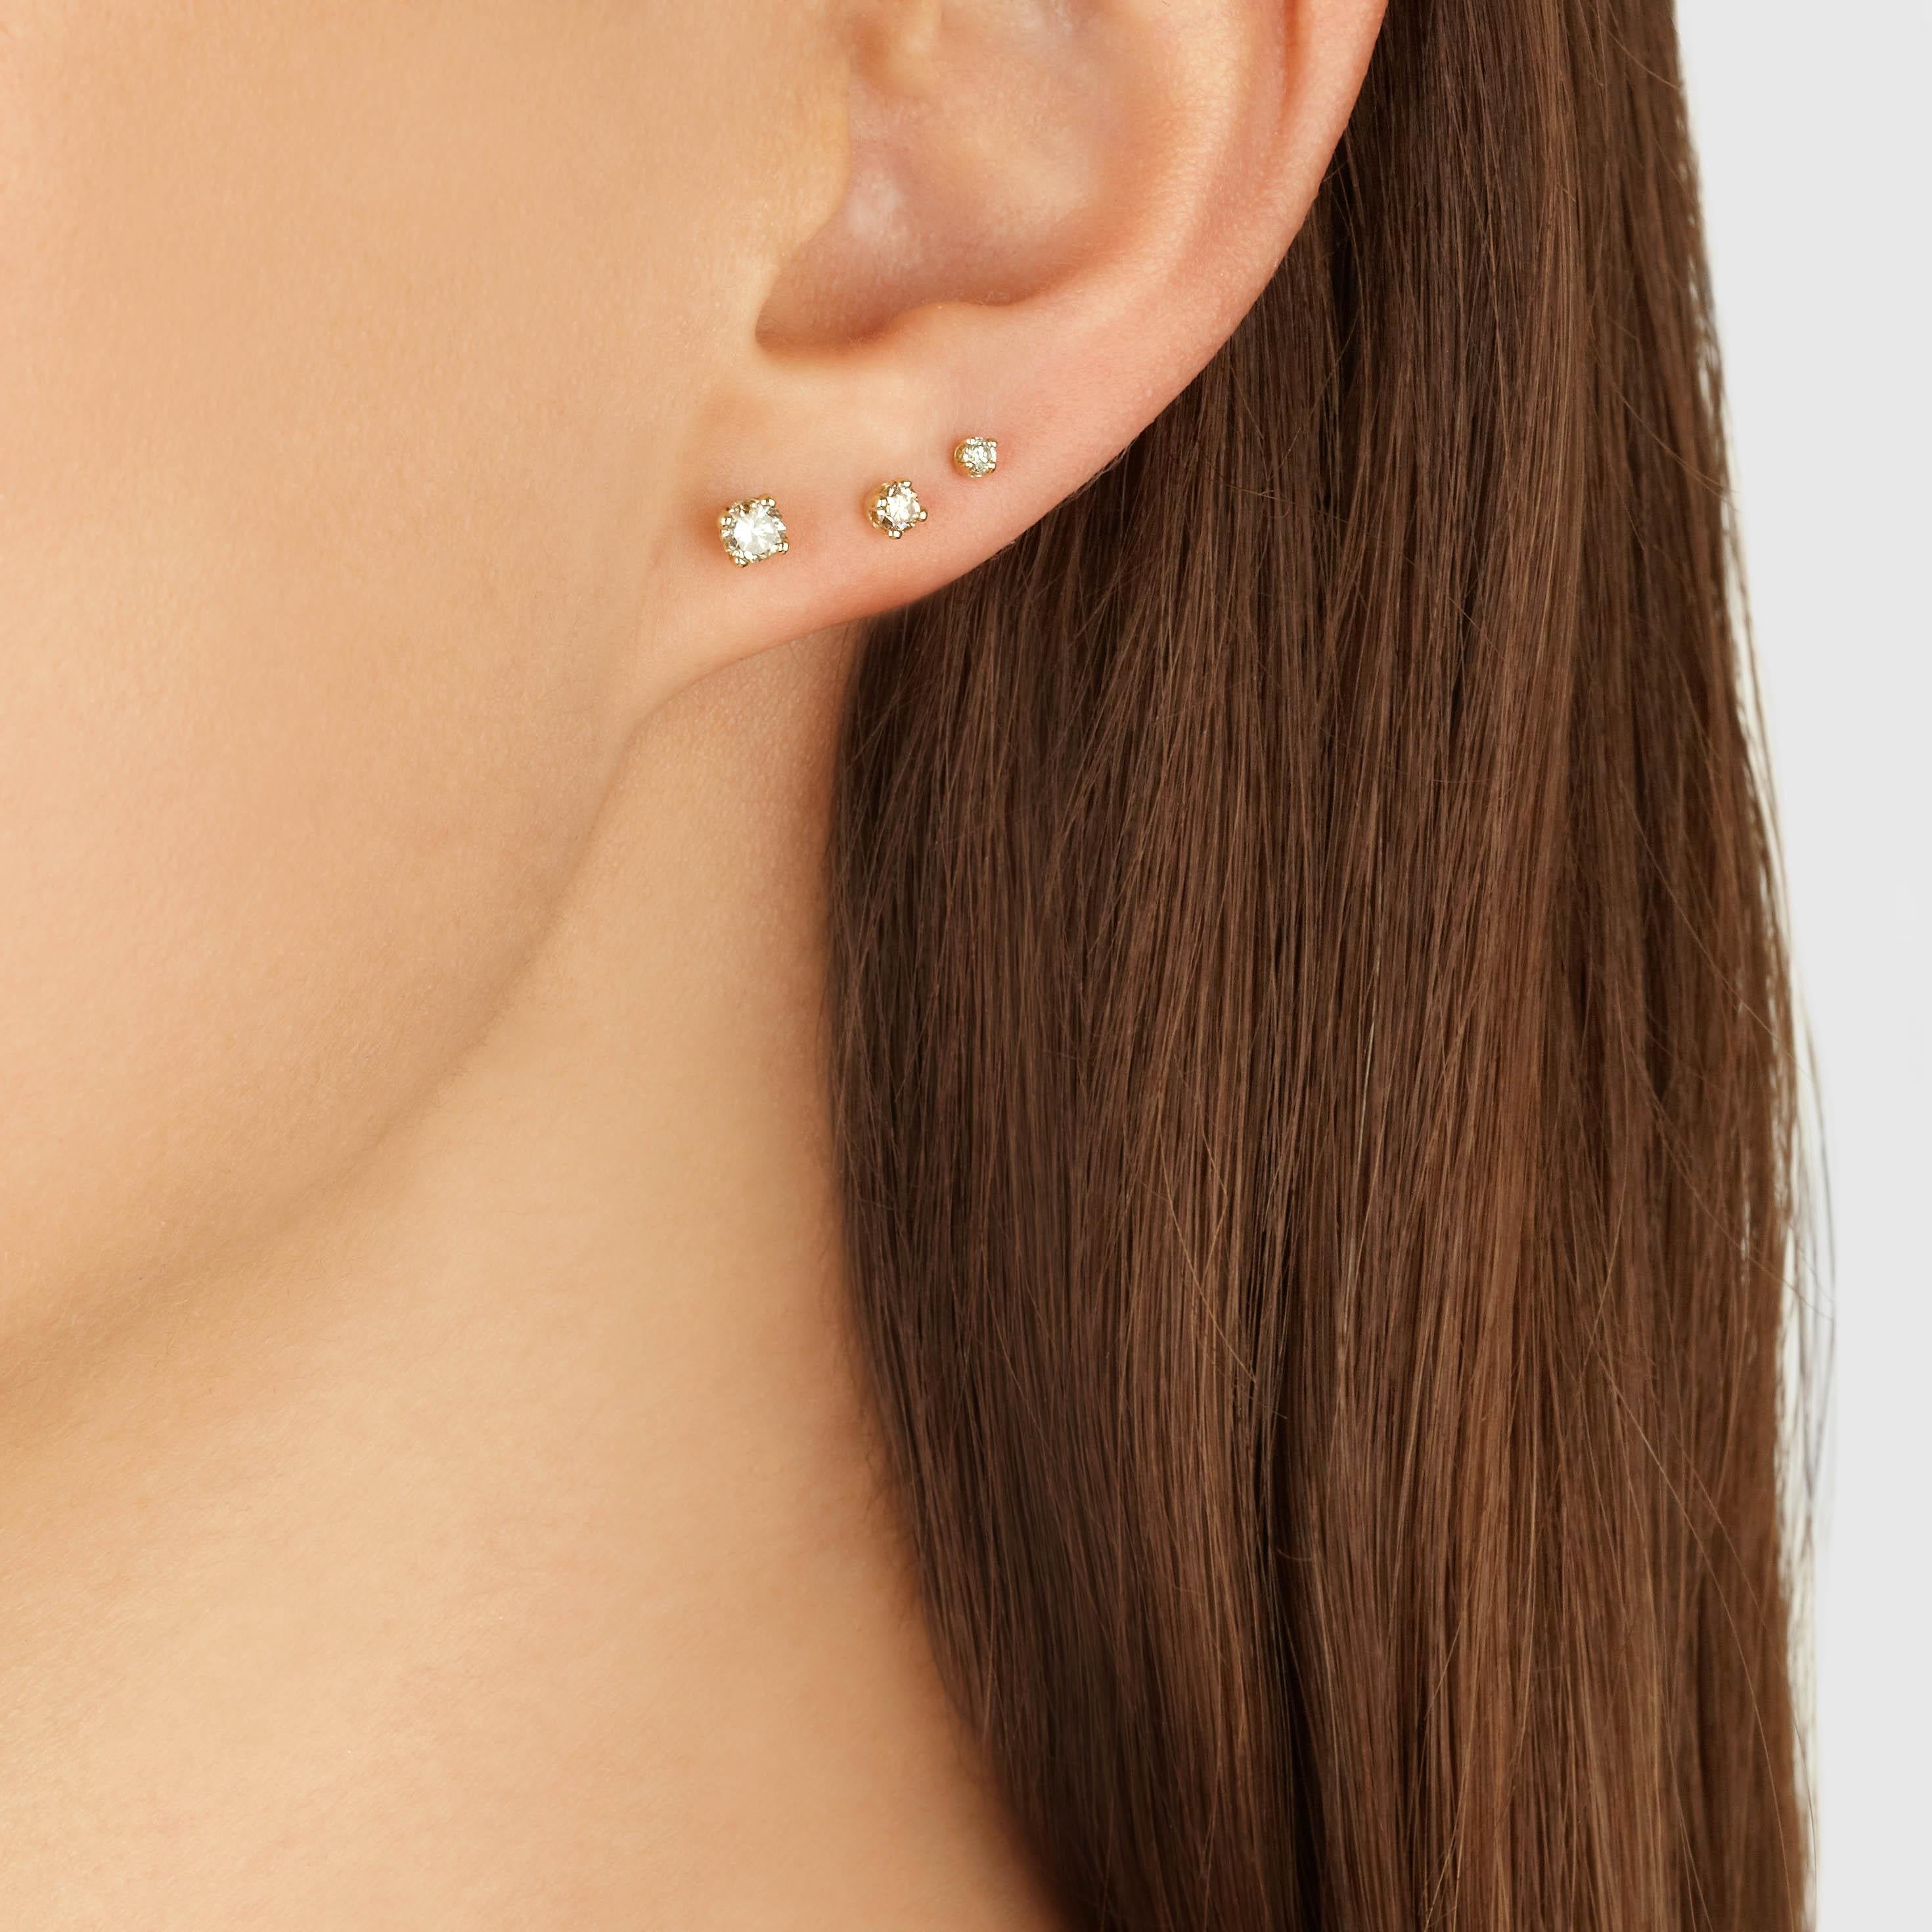 Women's Champagne Diamond Stud Earring ‘Single’ by Allison Bryan